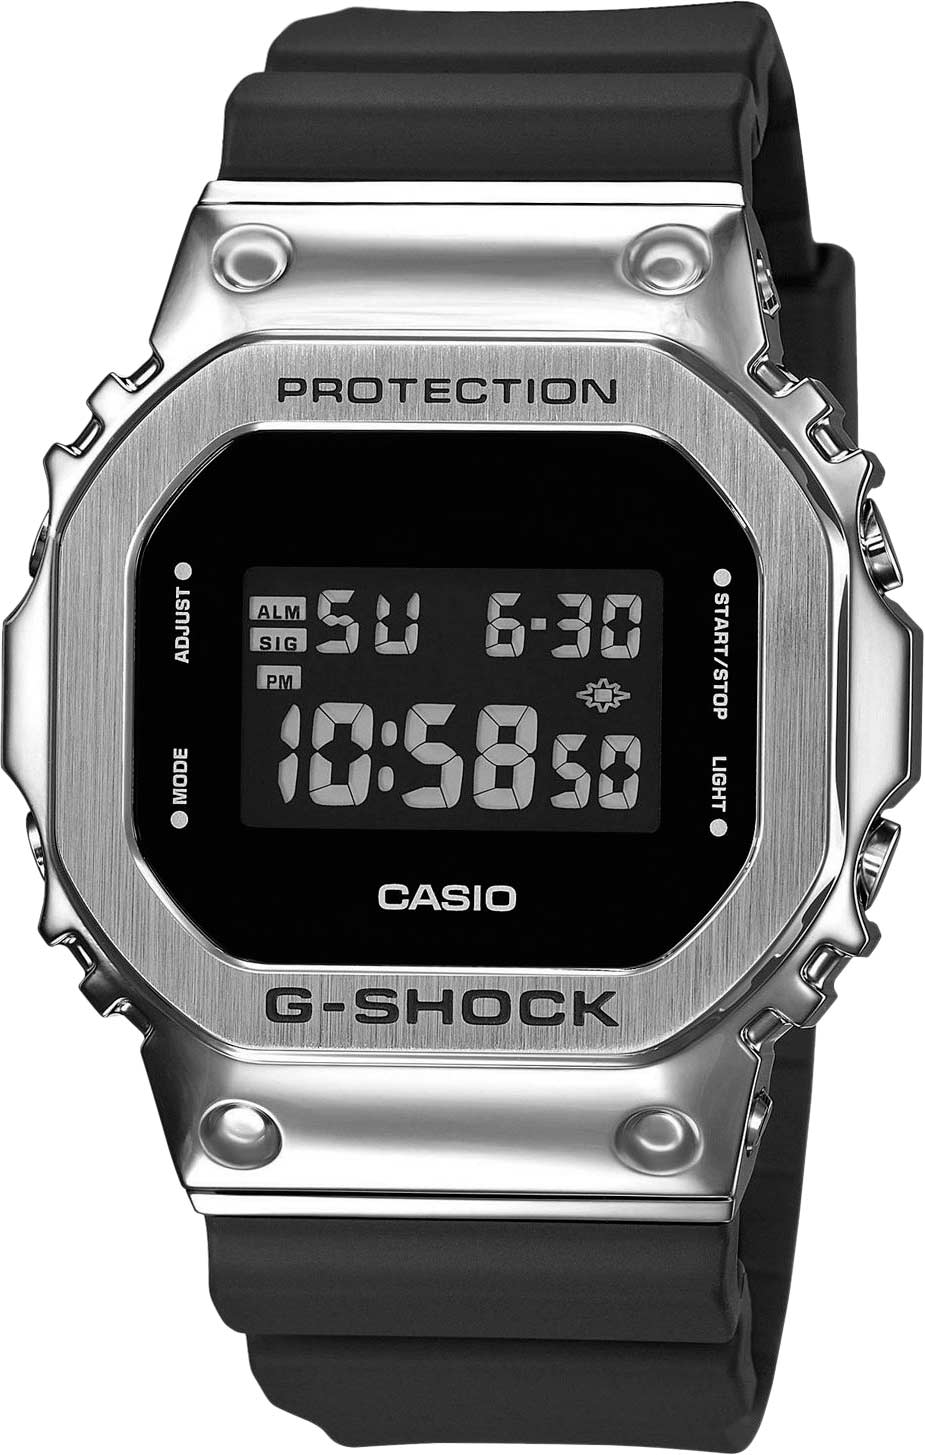    Casio G-SHOCK GM-5600-1ER  